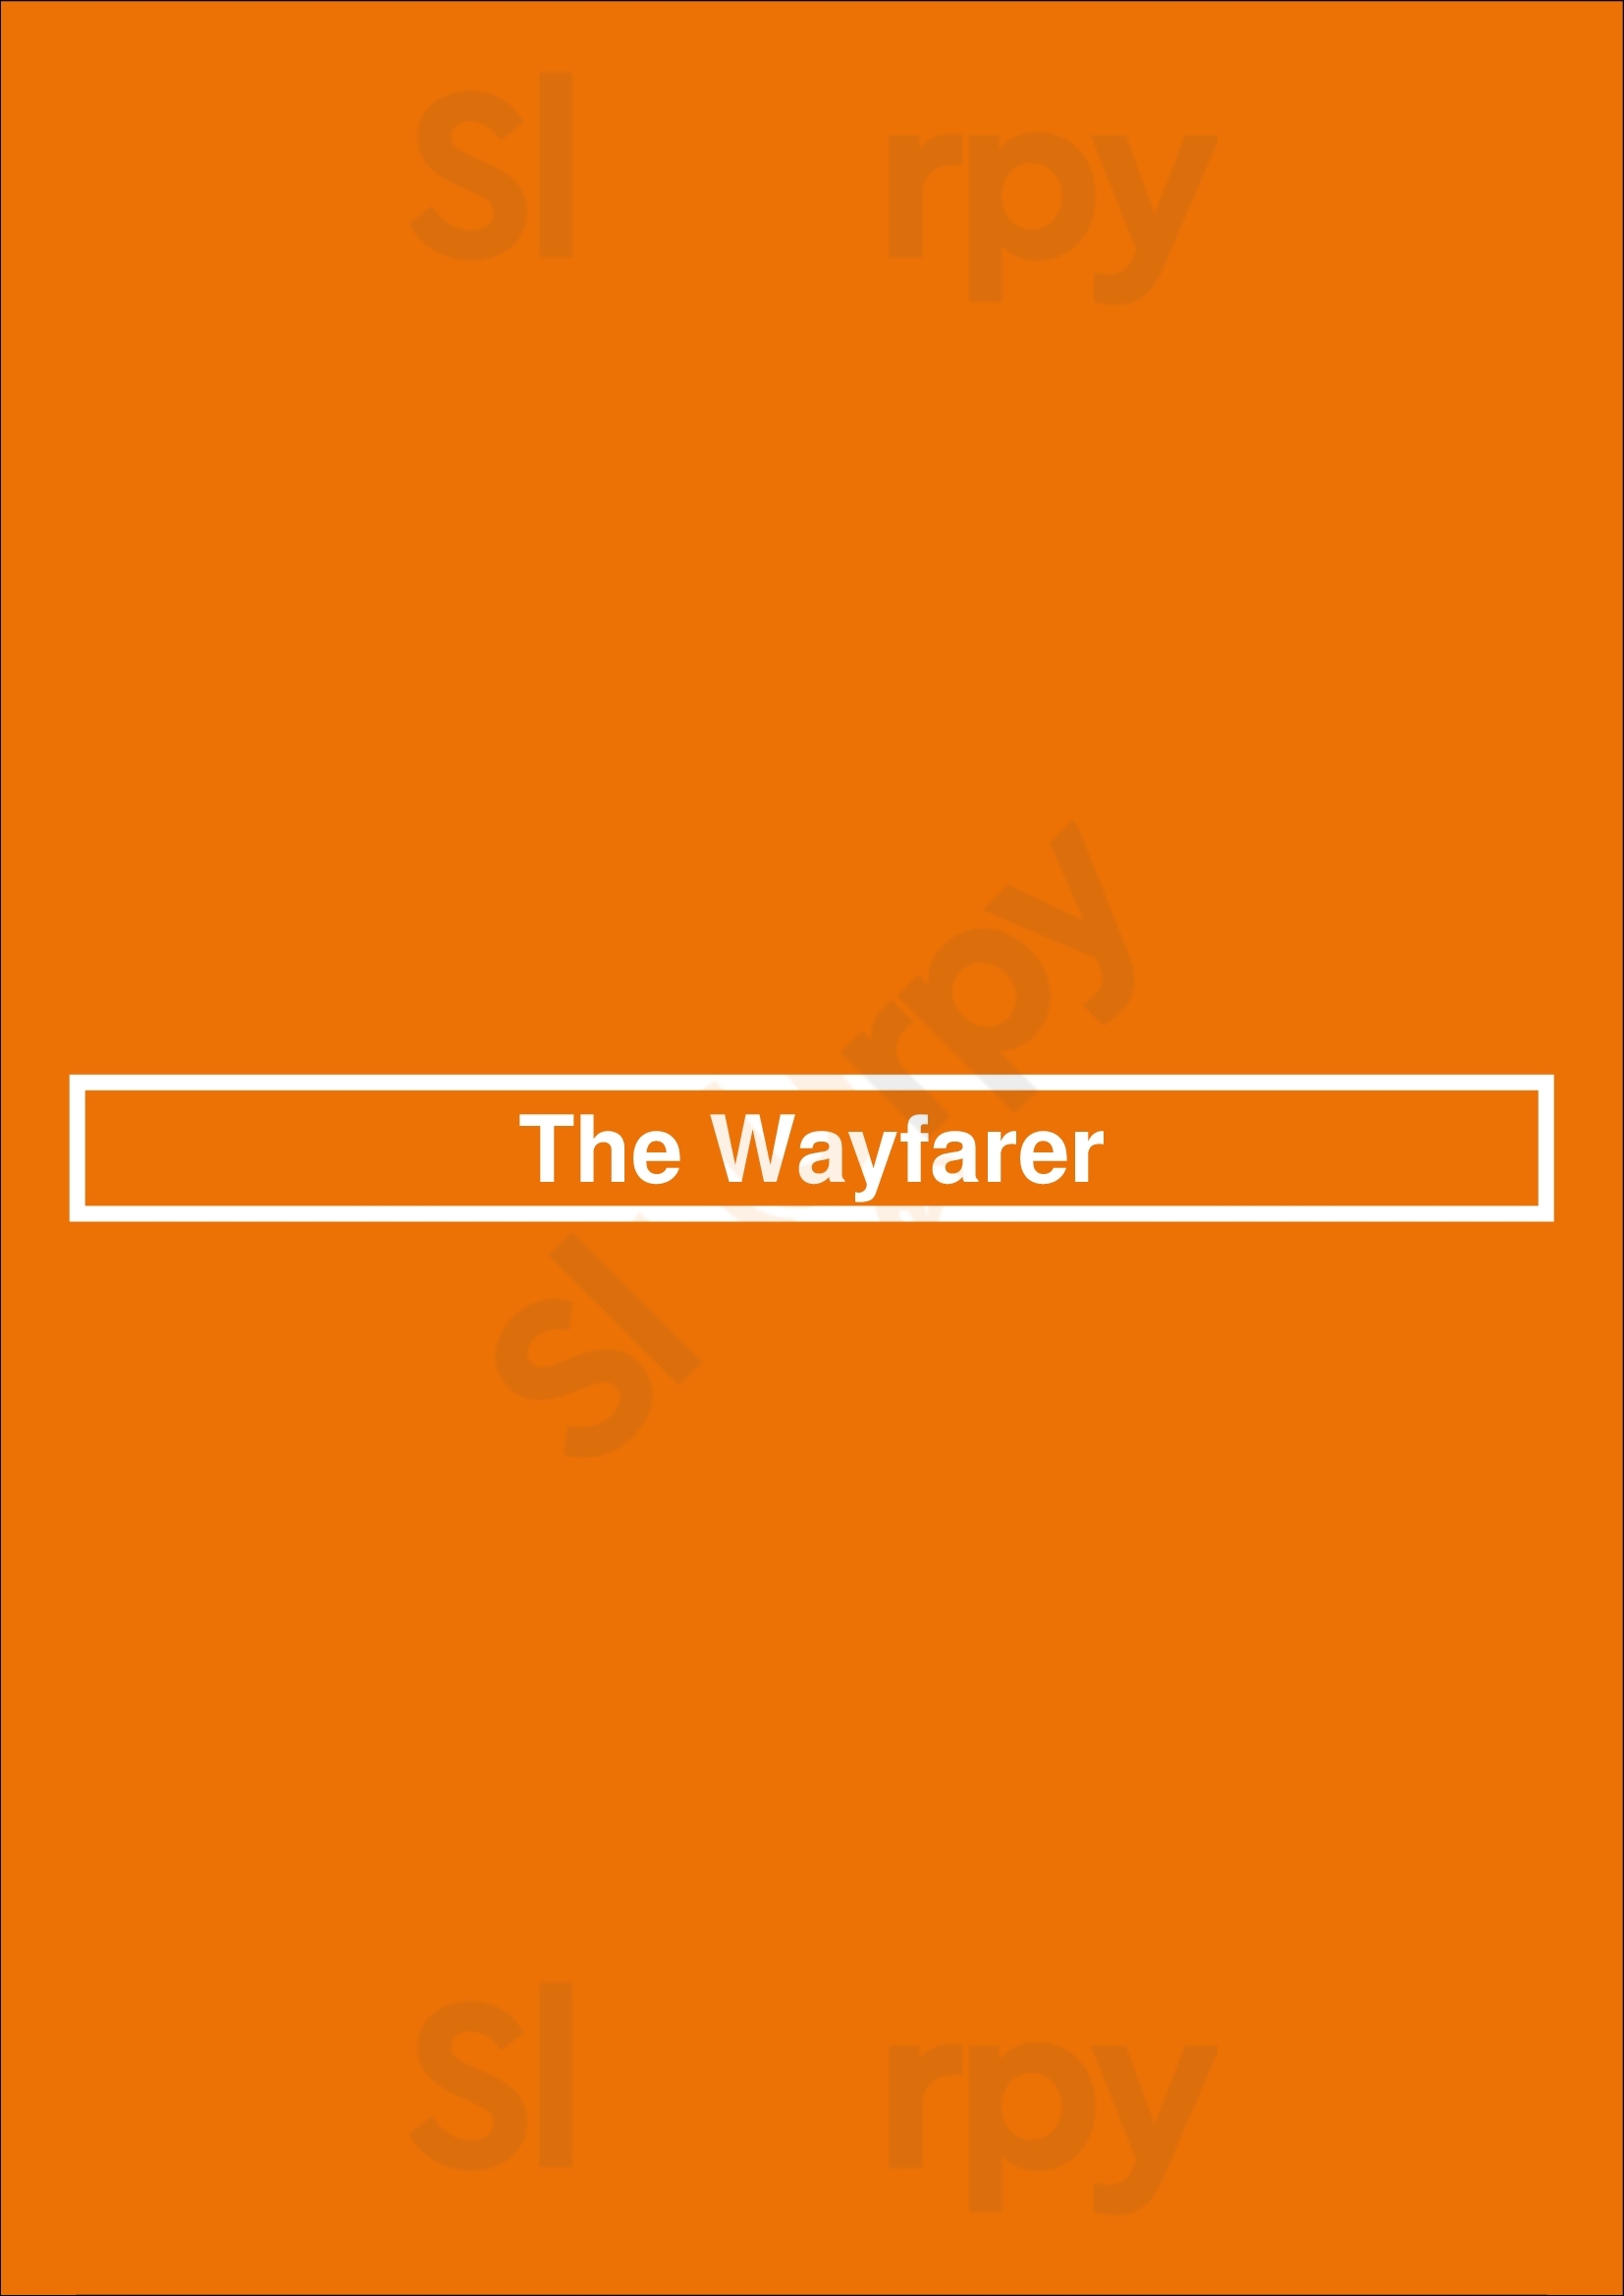 The Wayfarer New York City Menu - 1